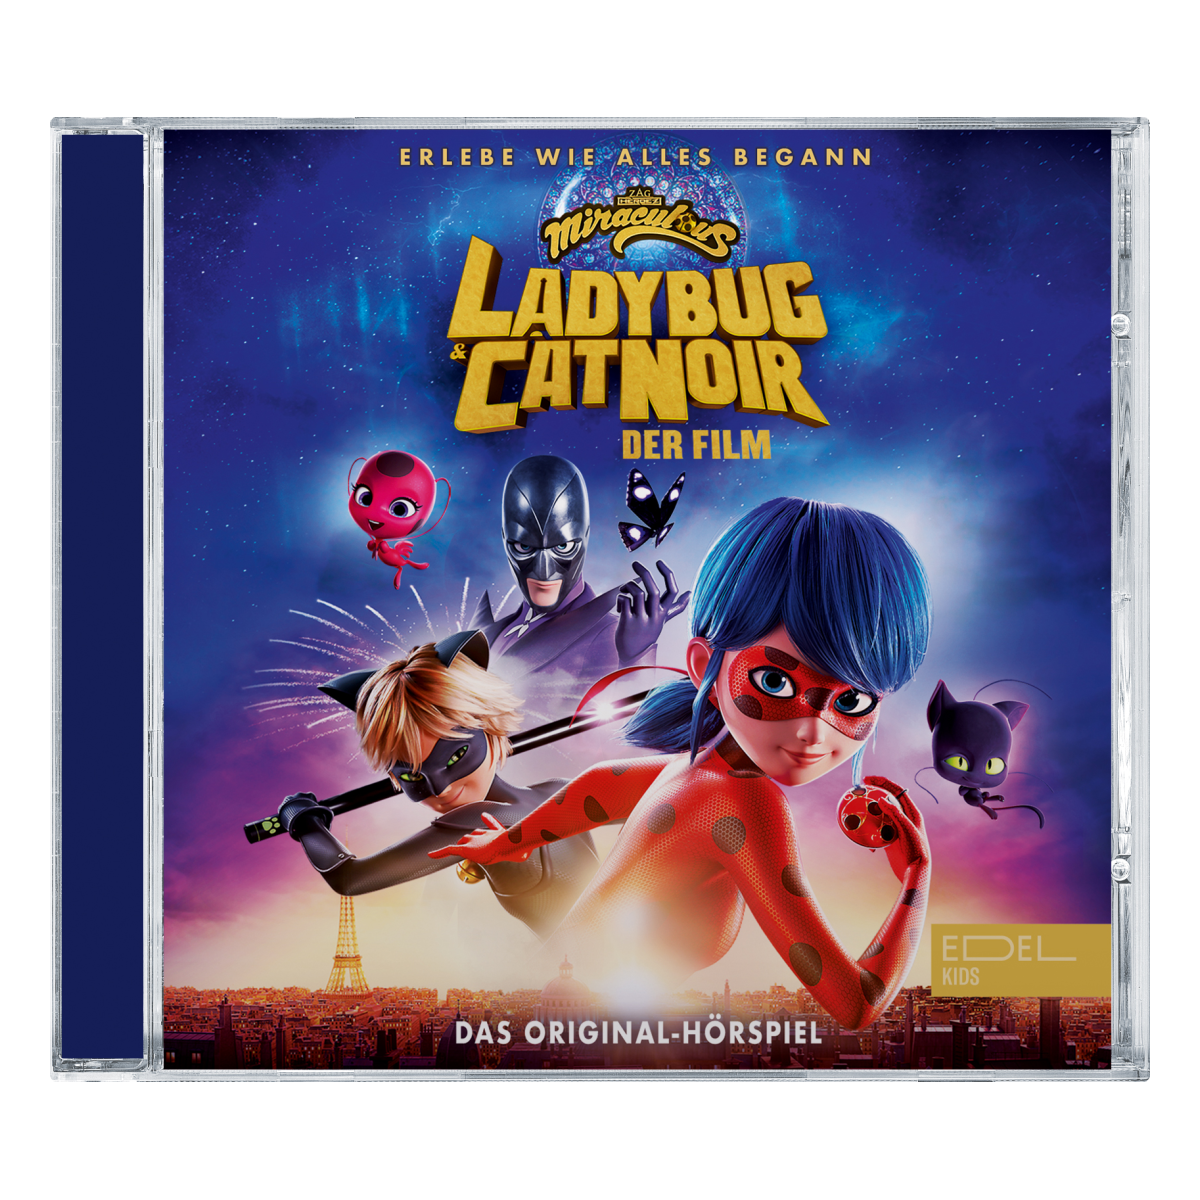 Edel:Kids präsentiert Original-Hörspiel und Soundtrack zu "Miraculous: Ladybug & Cat Noir - Der Film"